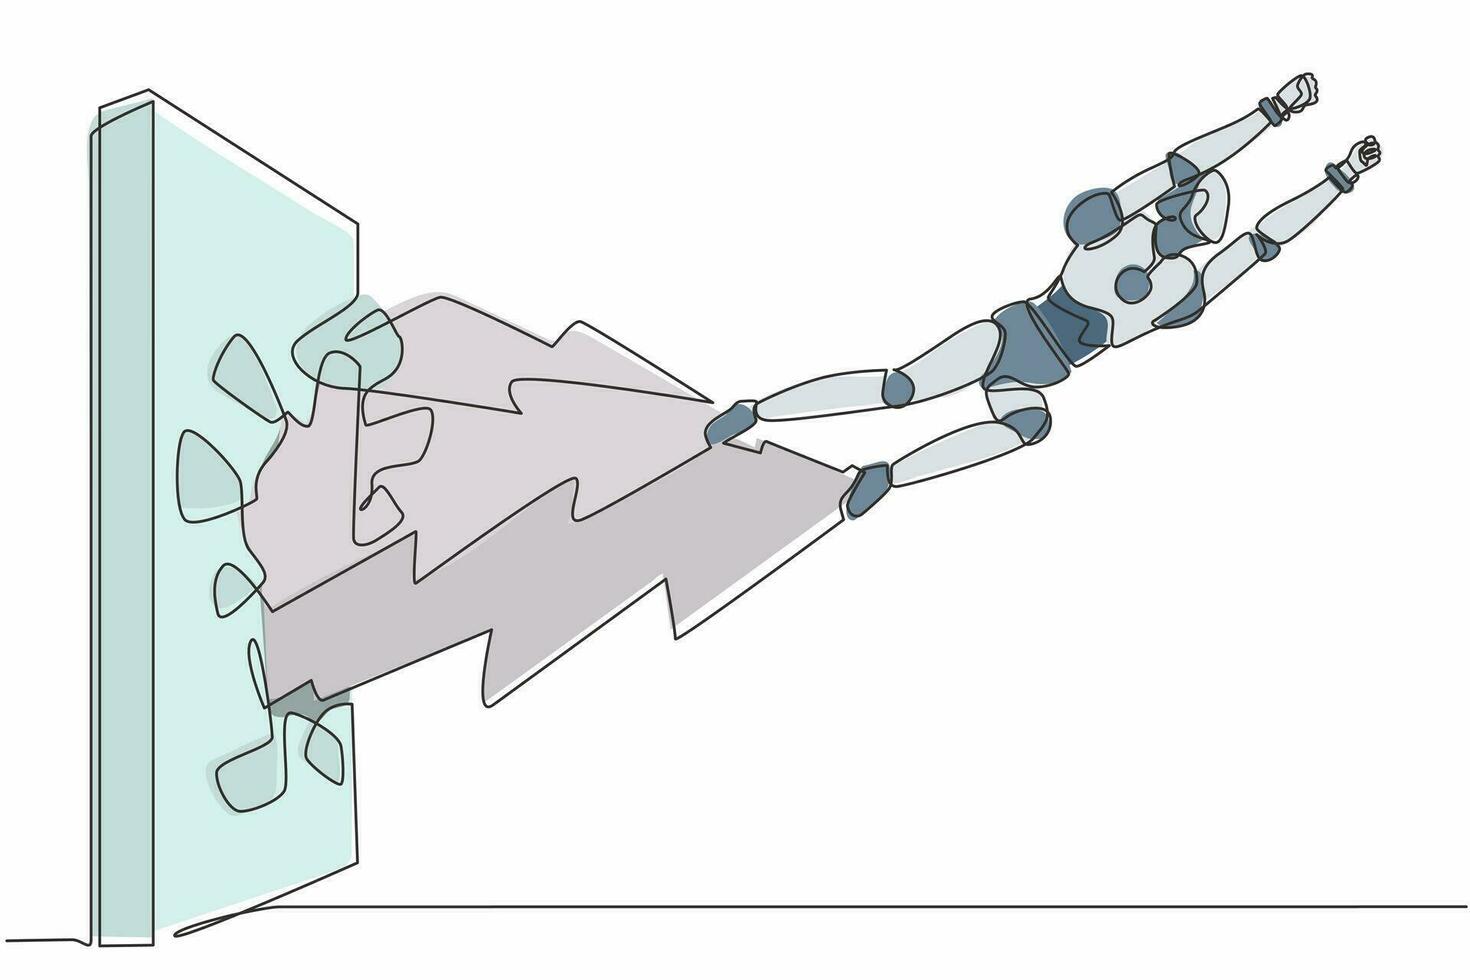 el robot de dibujo continuo de una línea golpea y rompe la pared. robot volador rompe la pared. organismo cibernético robot humanoide. futura robótica. ilustración gráfica de vector de diseño de dibujo de una sola línea